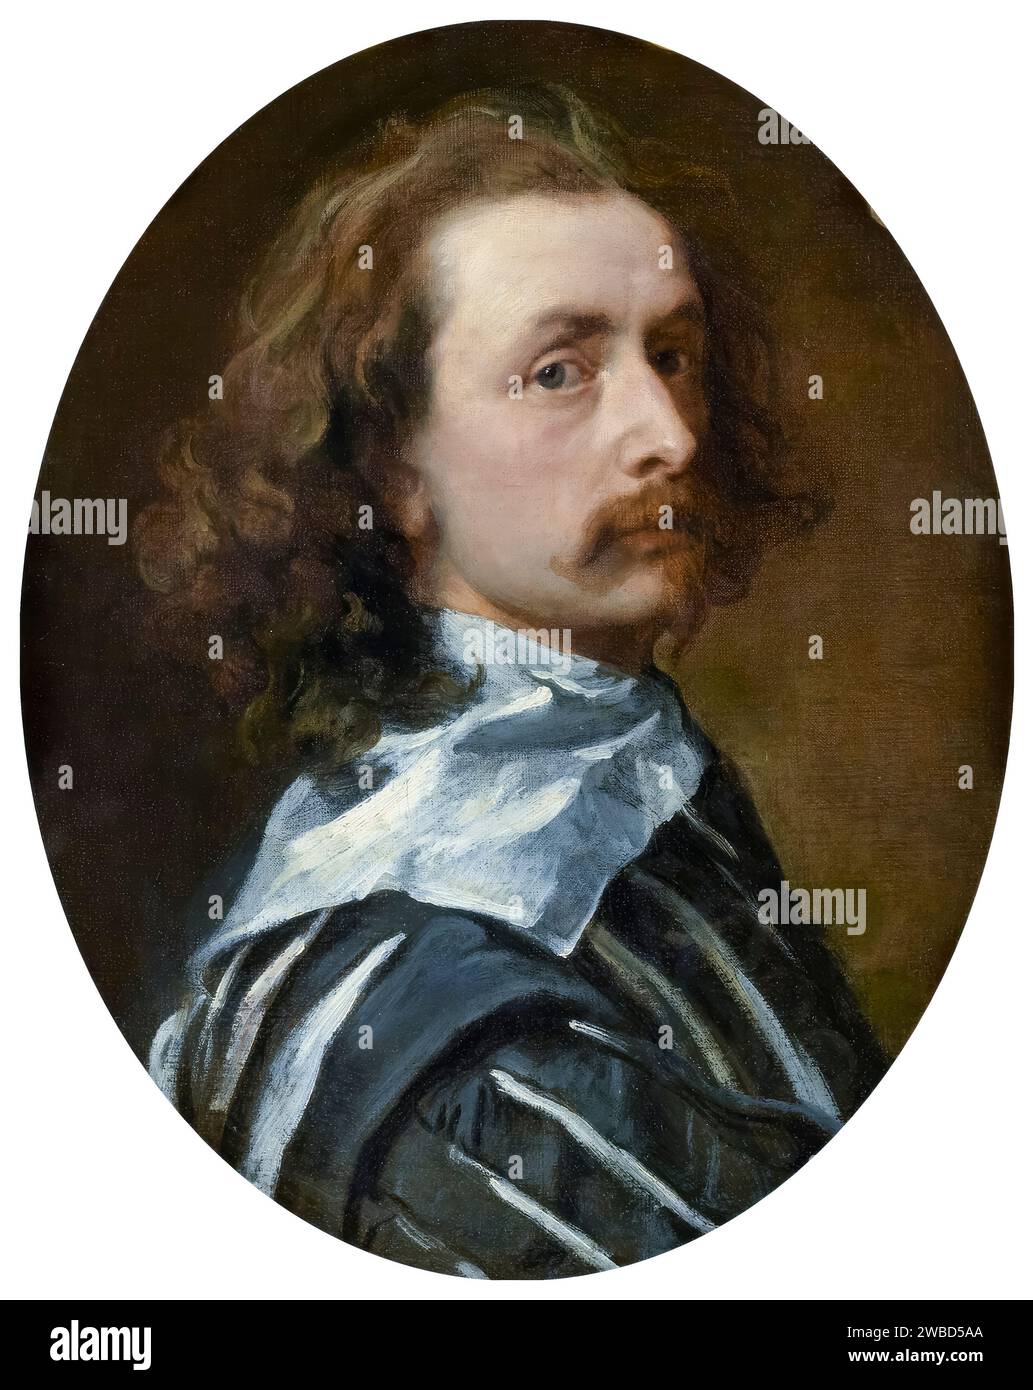 Sir Anthony van Dyck (1599-1641), autoportrait à l'huile sur toile, vers 1640 Banque D'Images